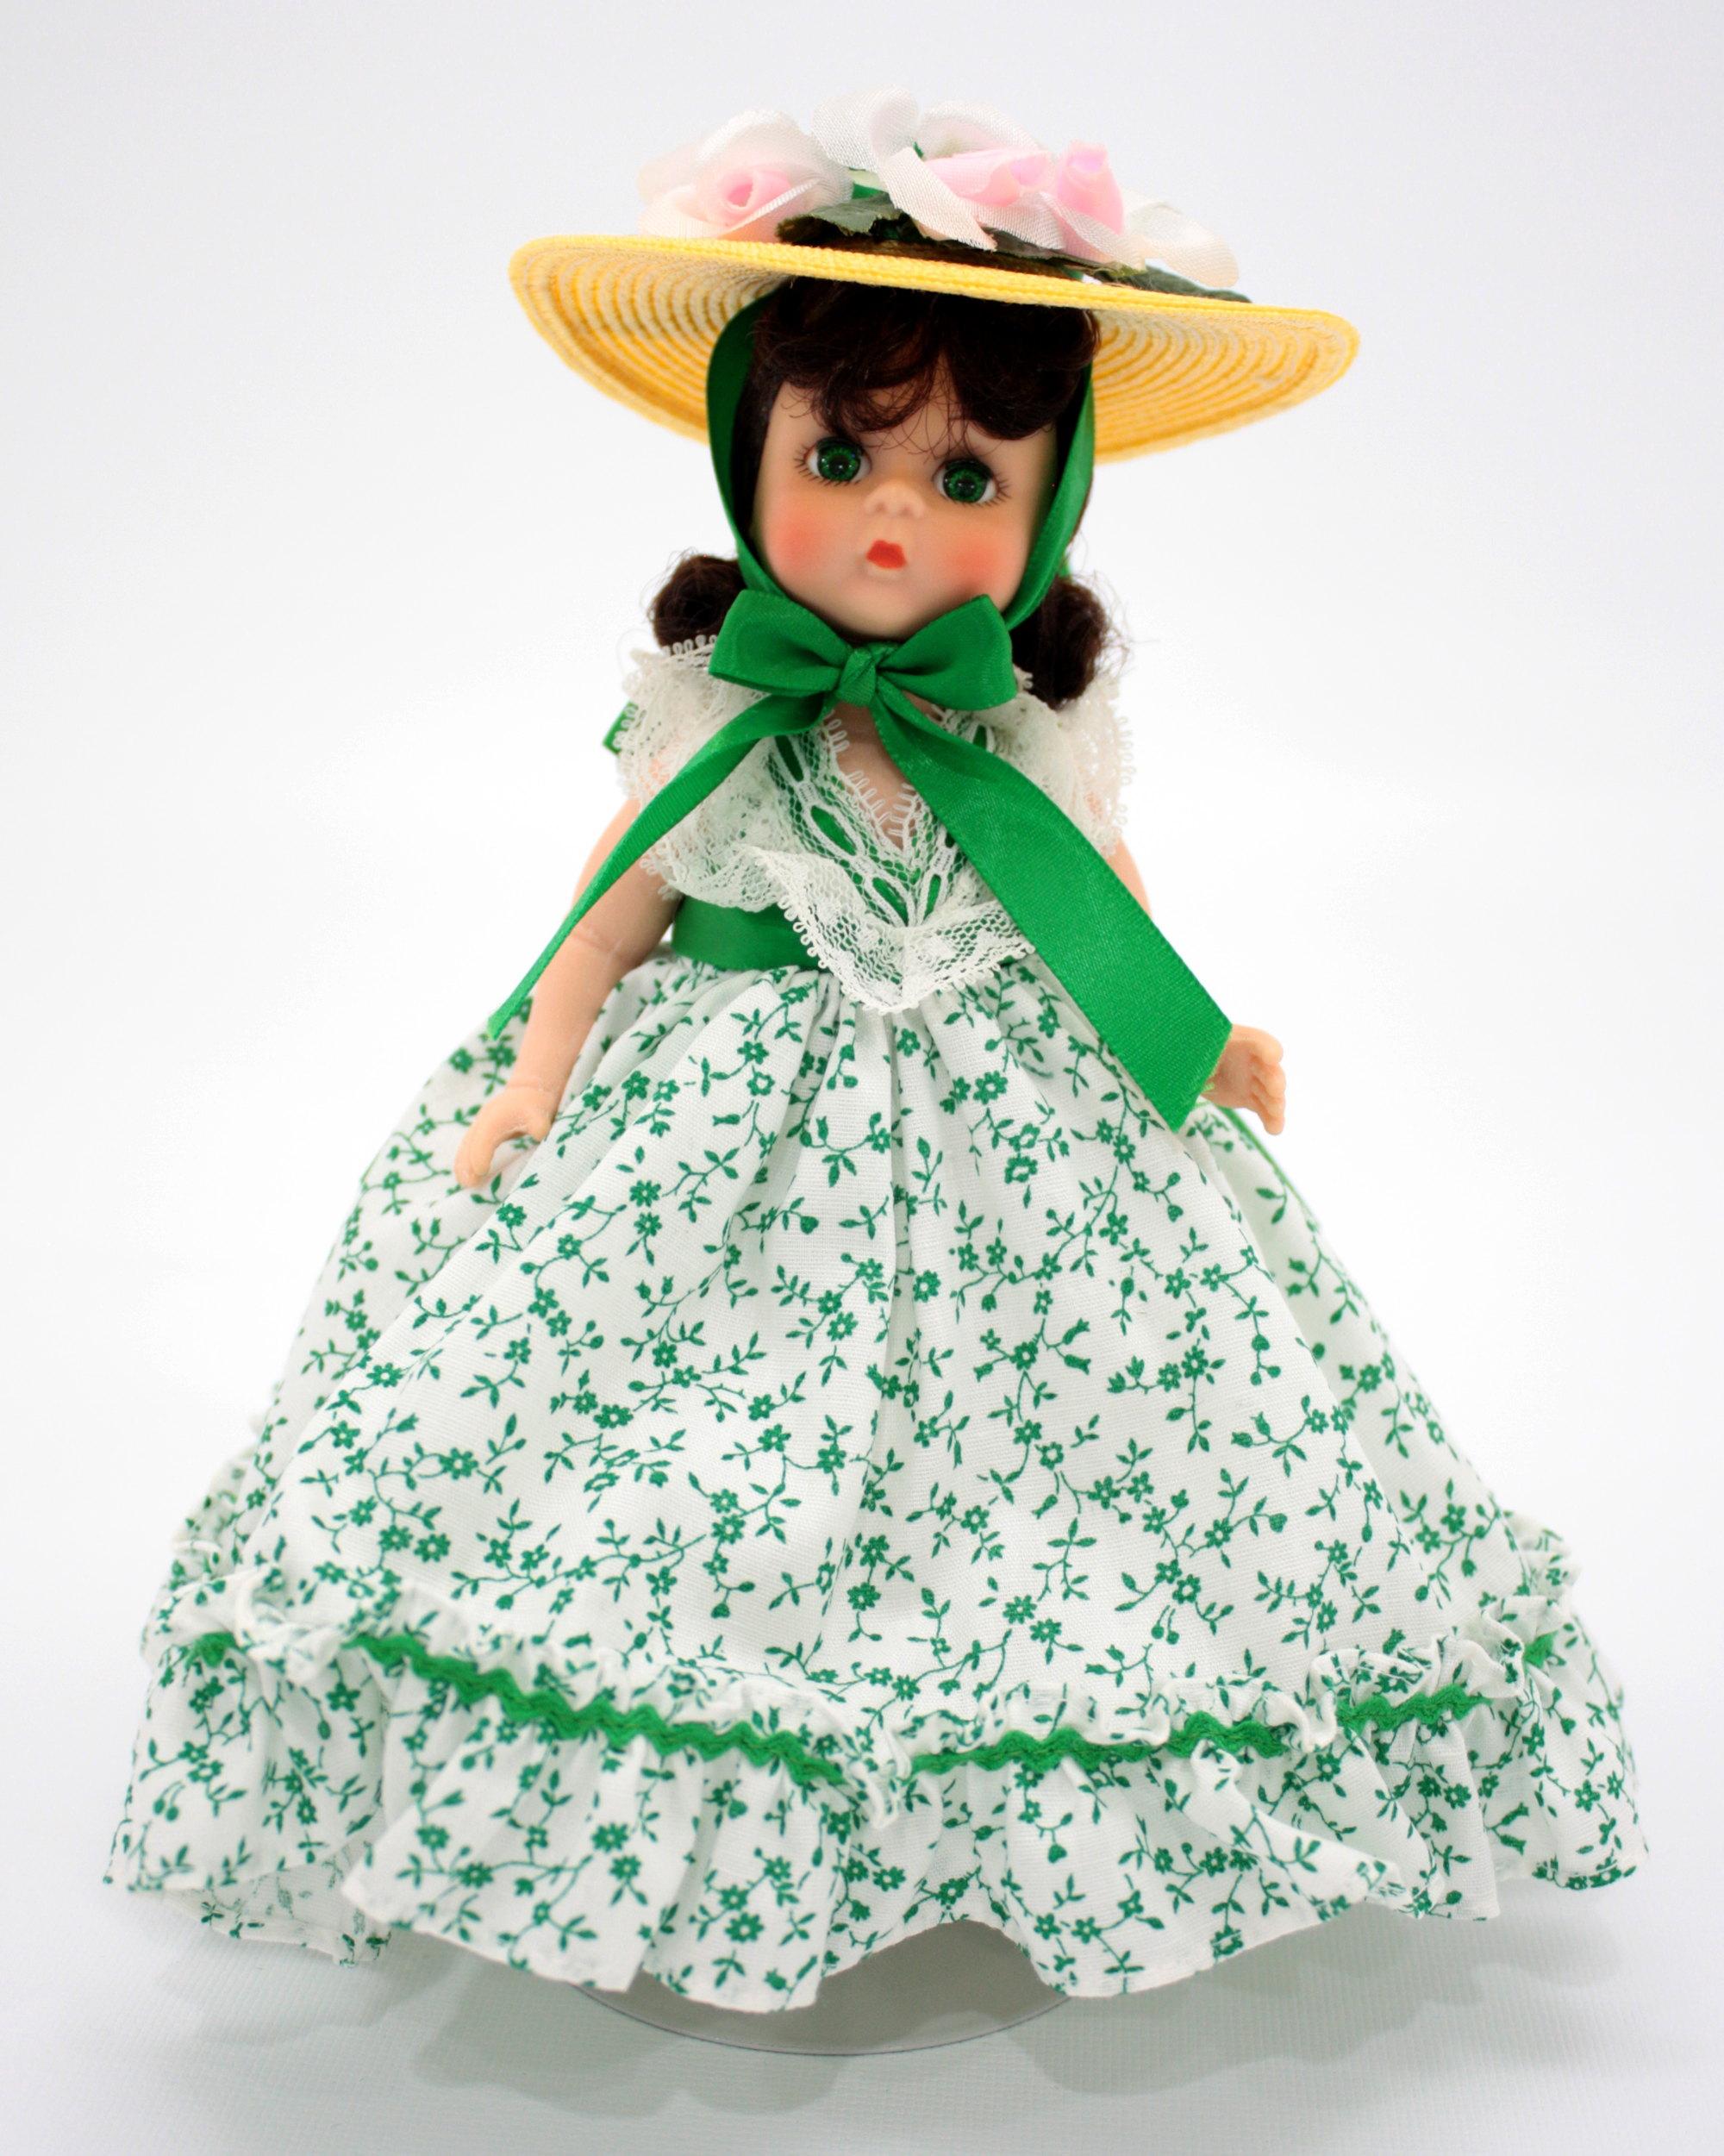 Madame Alexander Scarlett Doll Scarlett O' Hara Doll 13.5 Inch Doll